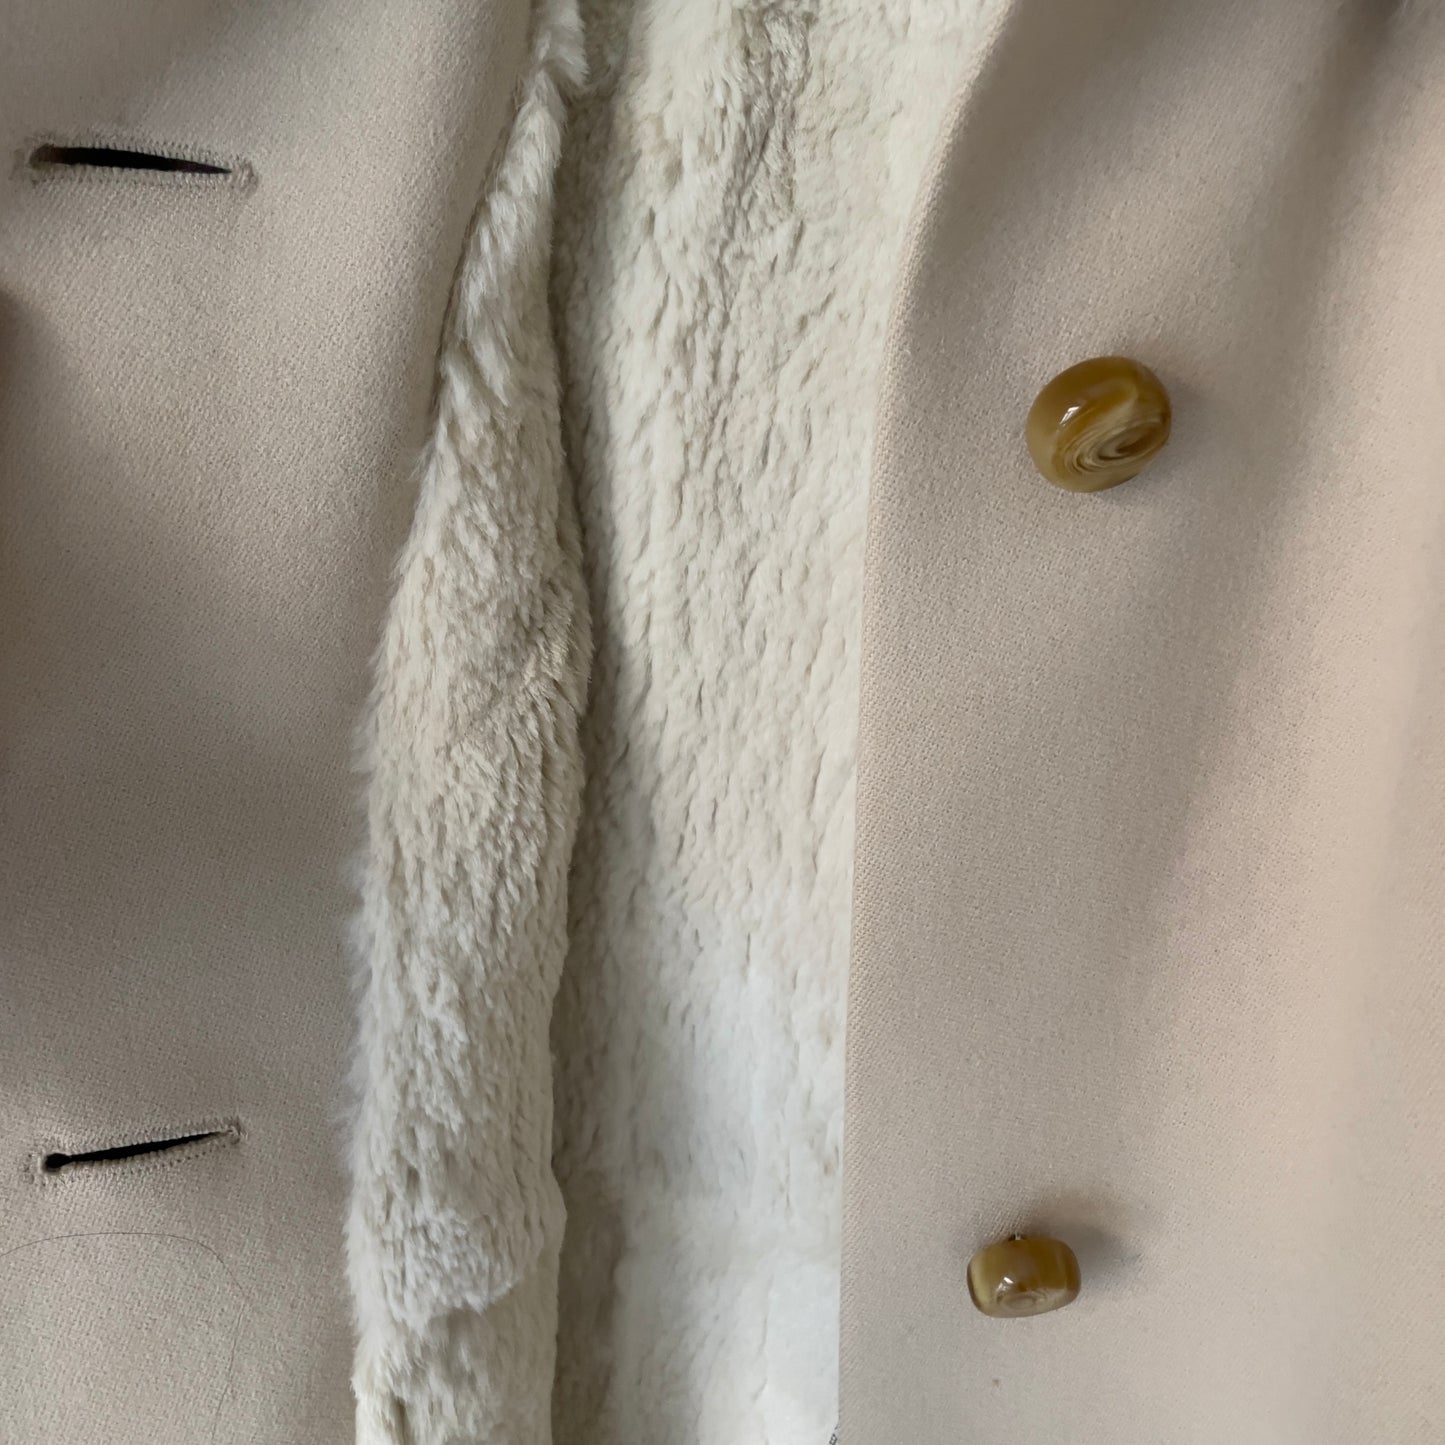 Vintage Real Fur Collar Coat - Upsala Kapp